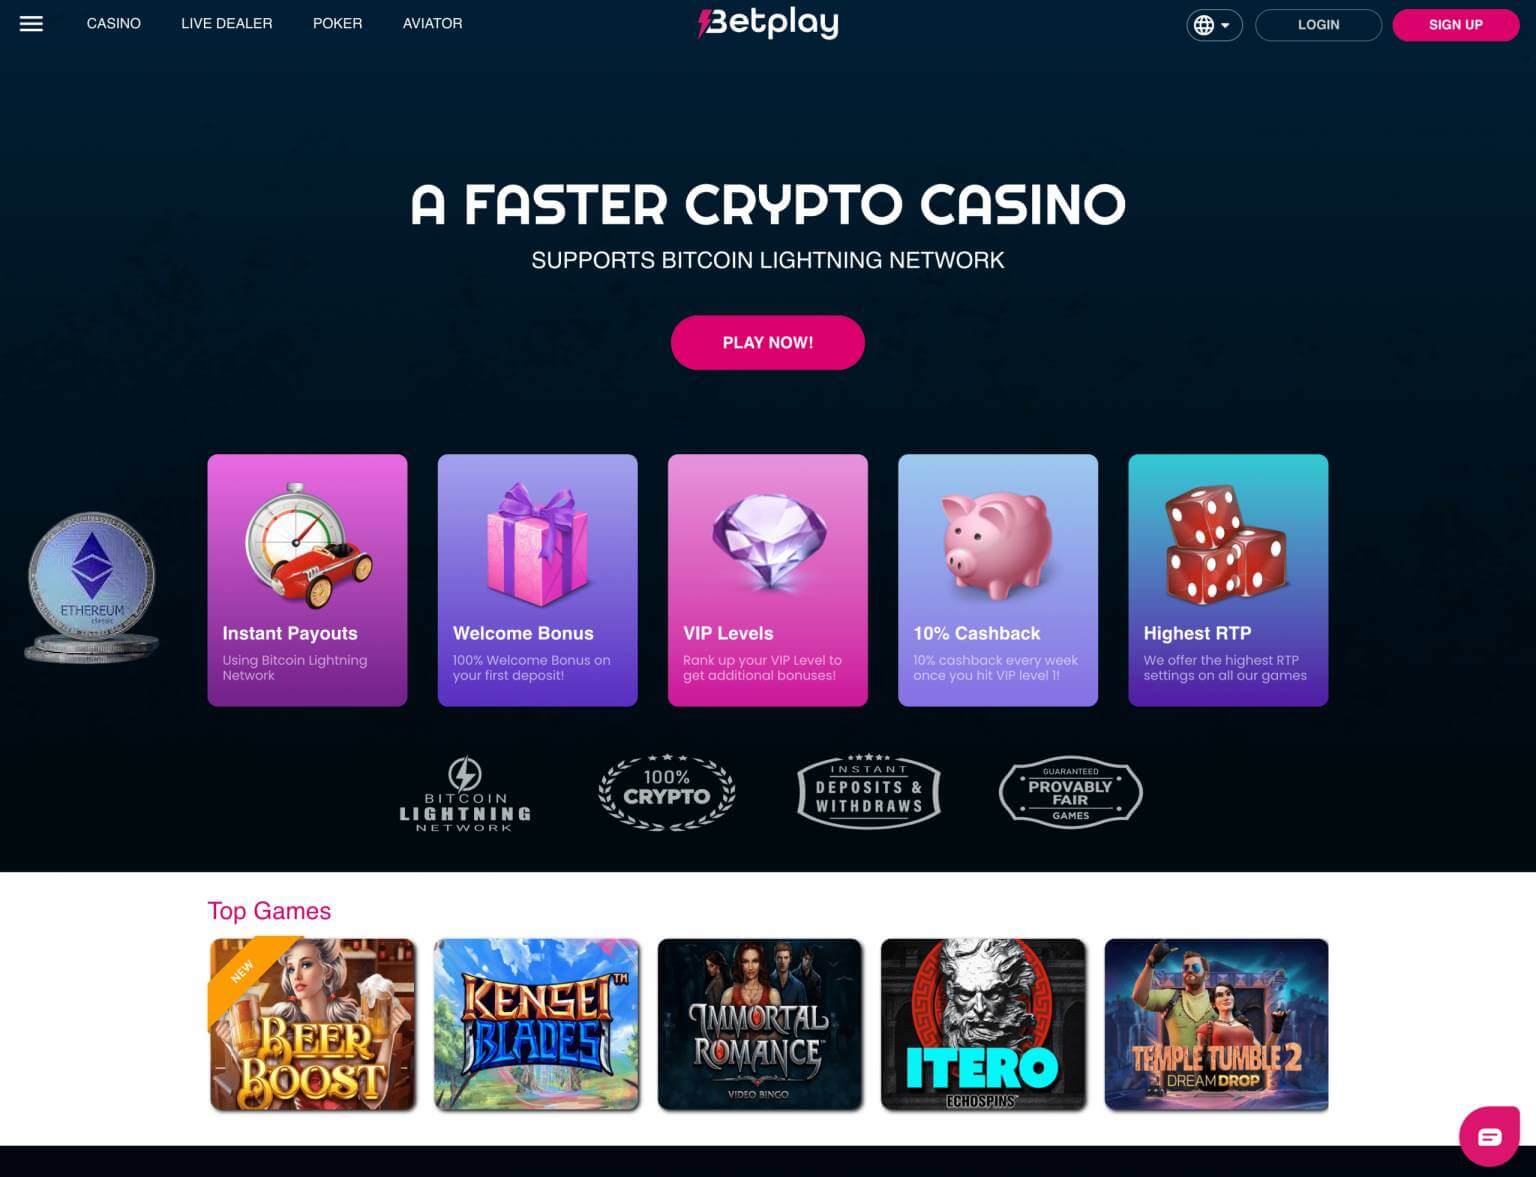 betplay casino